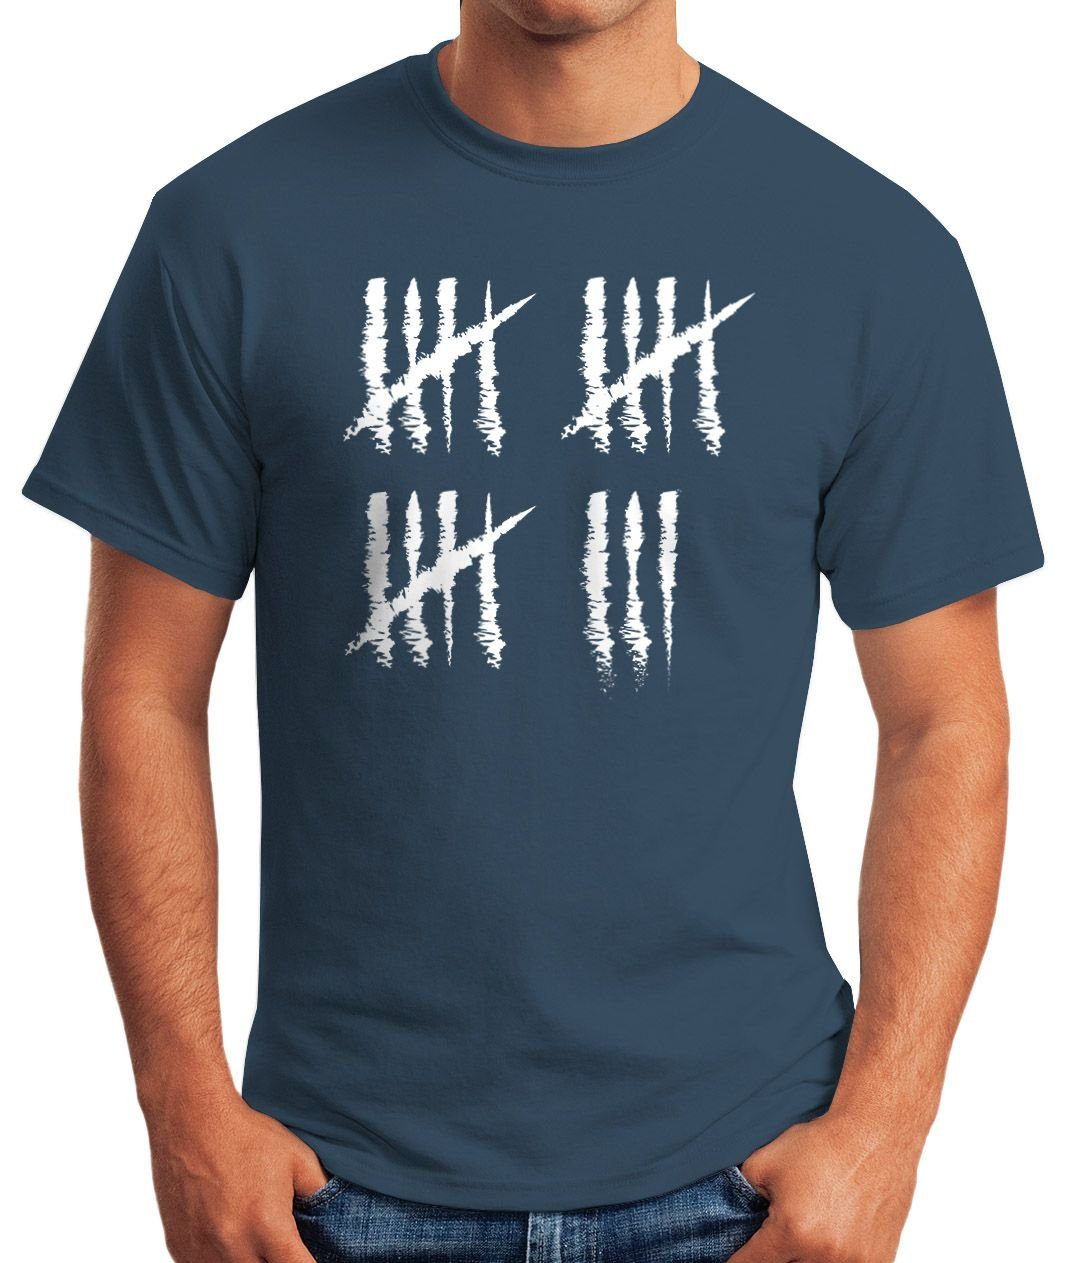 MoonWorks Print-Shirt Herren T-Shirt Fun-Shirt Object] Print Geburtstag Strichliste Alter mit Striche Jahrgang Geschenk blau Moonworks® Jubiläum 18 [object